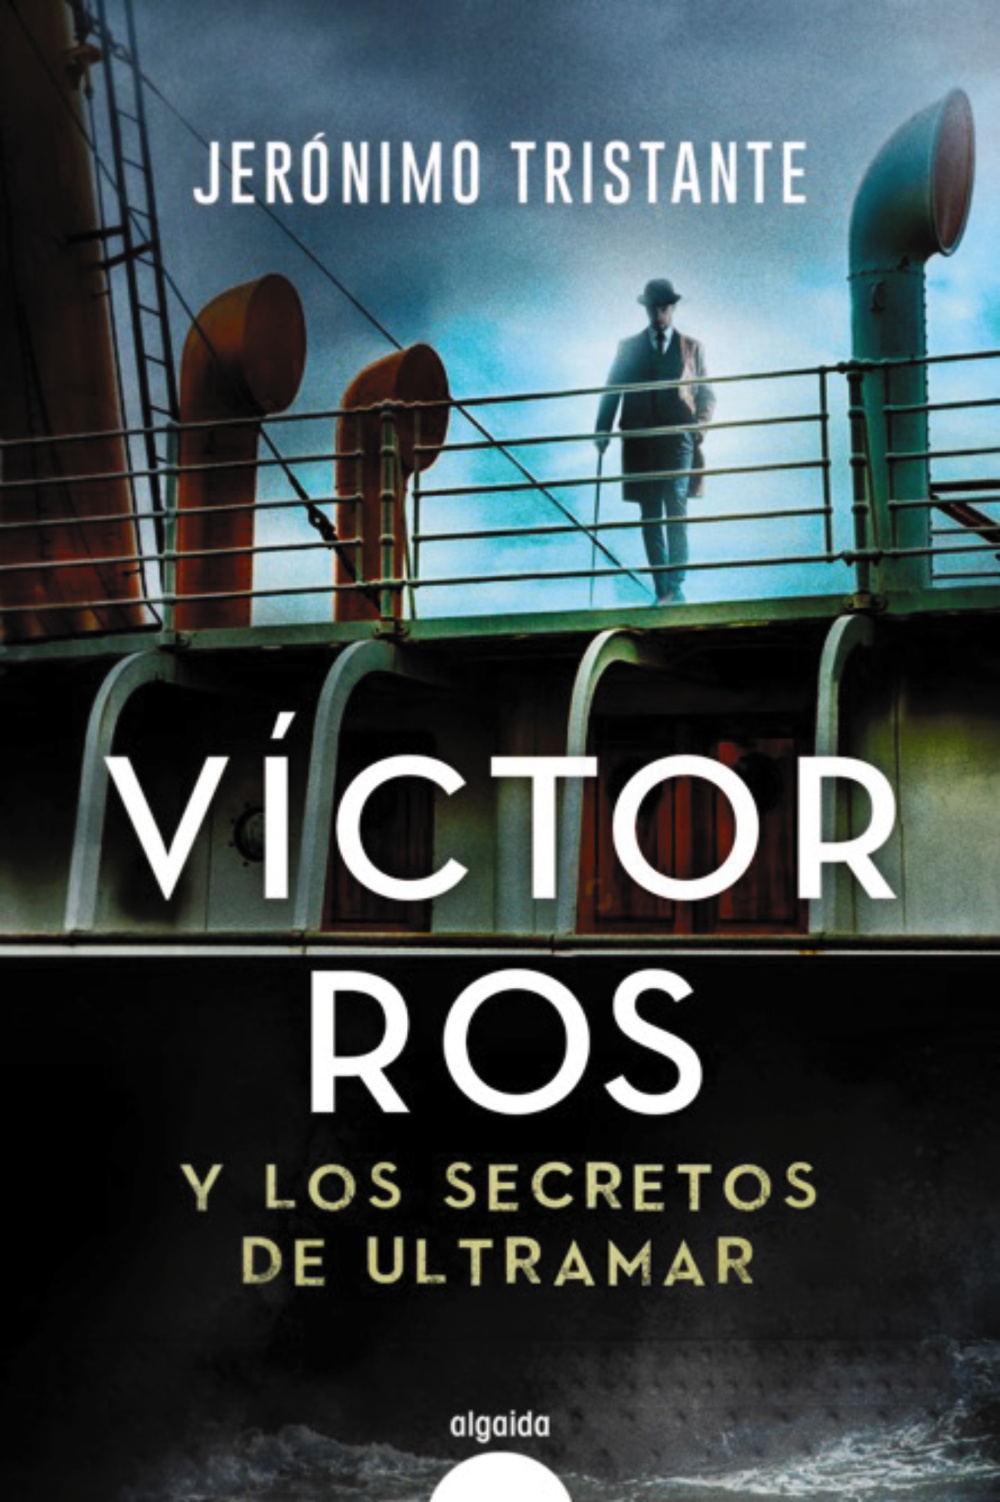 Víctor Ros, el regreso del personaje más emblemático de Jerónimo Tristante